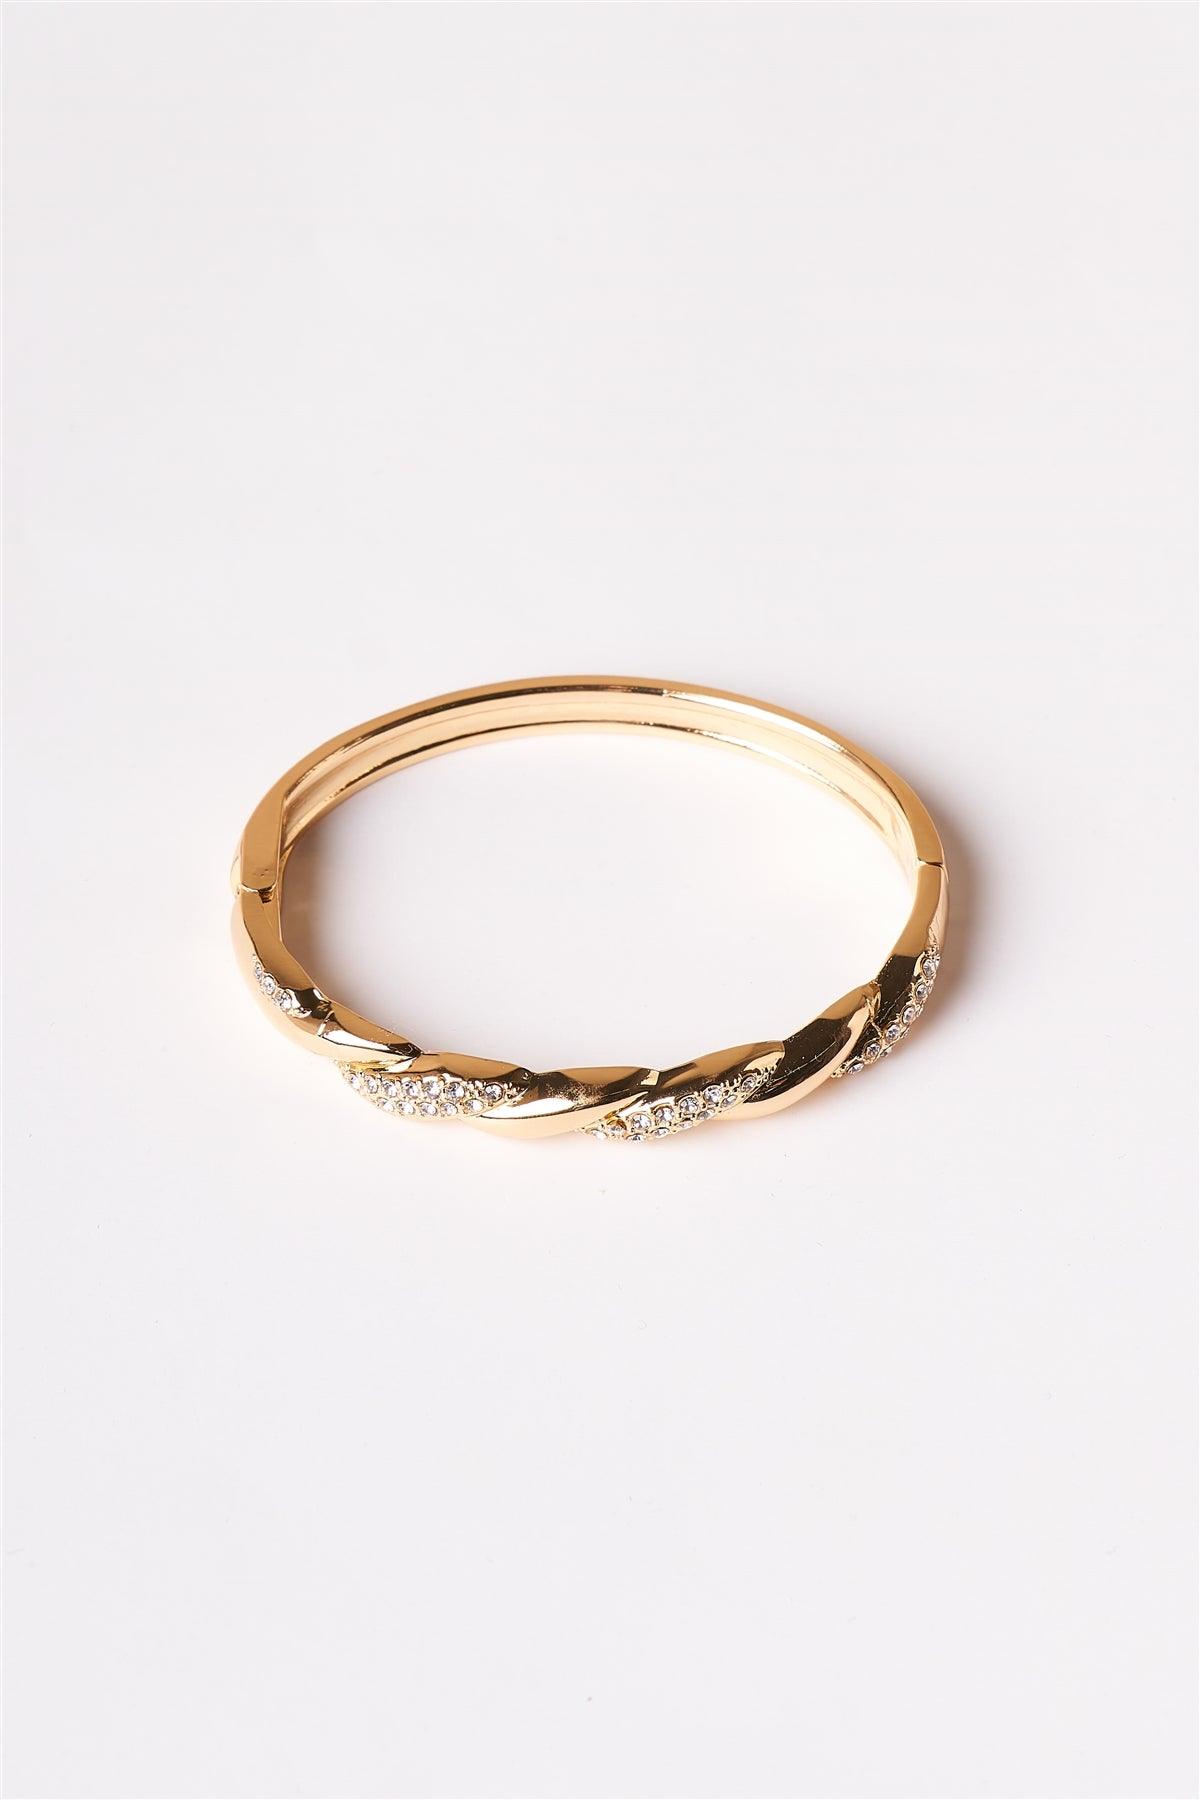 Gold Twist Bangle Bracelet /6 Pieces